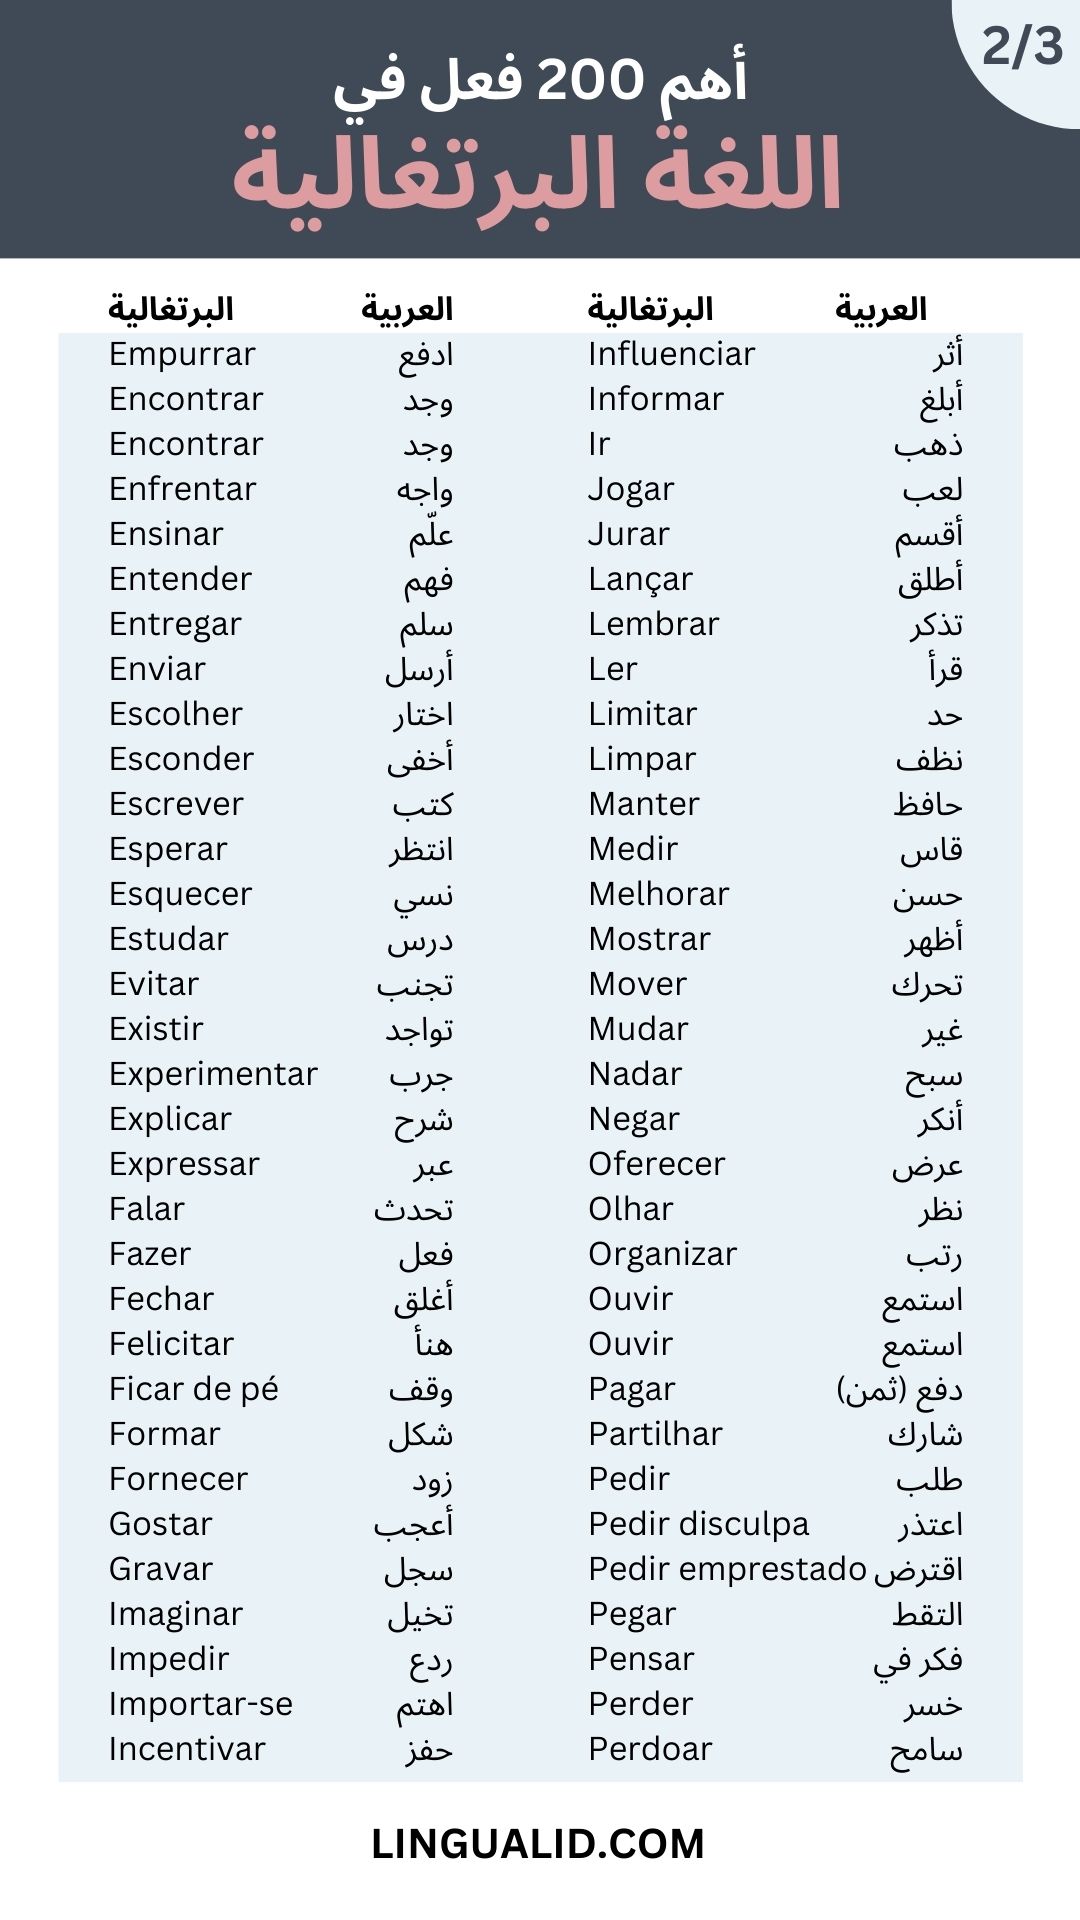 أهم الأفعال في اللغة البرتغالية مع الترجمة العربية